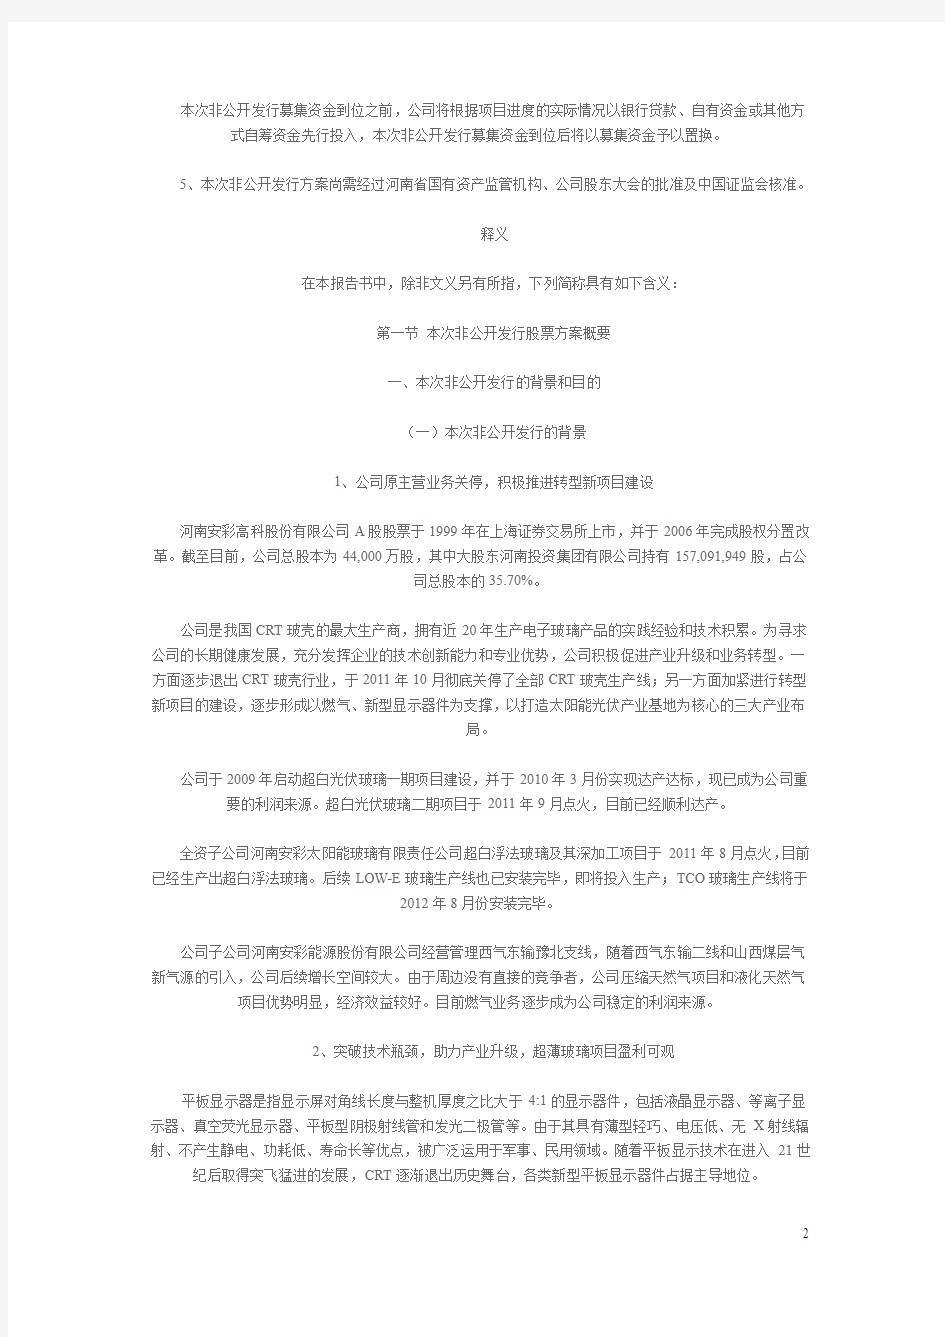 河南安彩高科股份有限公司非公开发行股票预案